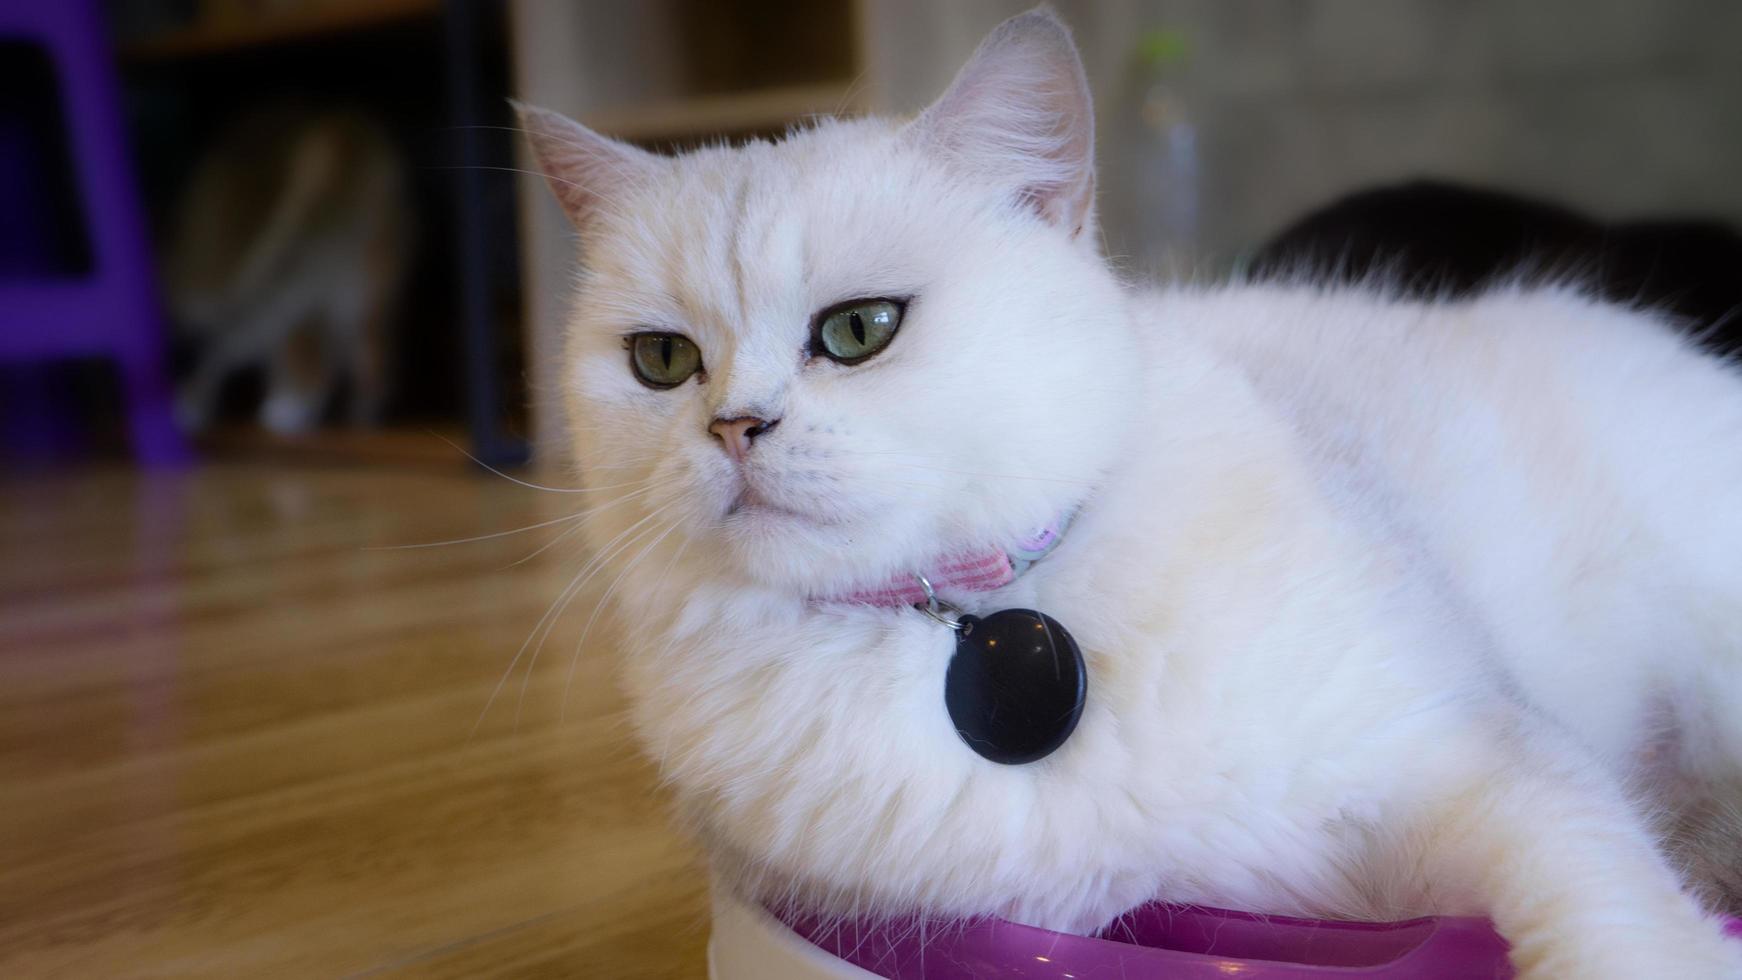 um lindo gato doméstico está descansando em uma sala quente e leve, um gato cinza de cabelo curto com olhos verdes, olhando para a câmera foto